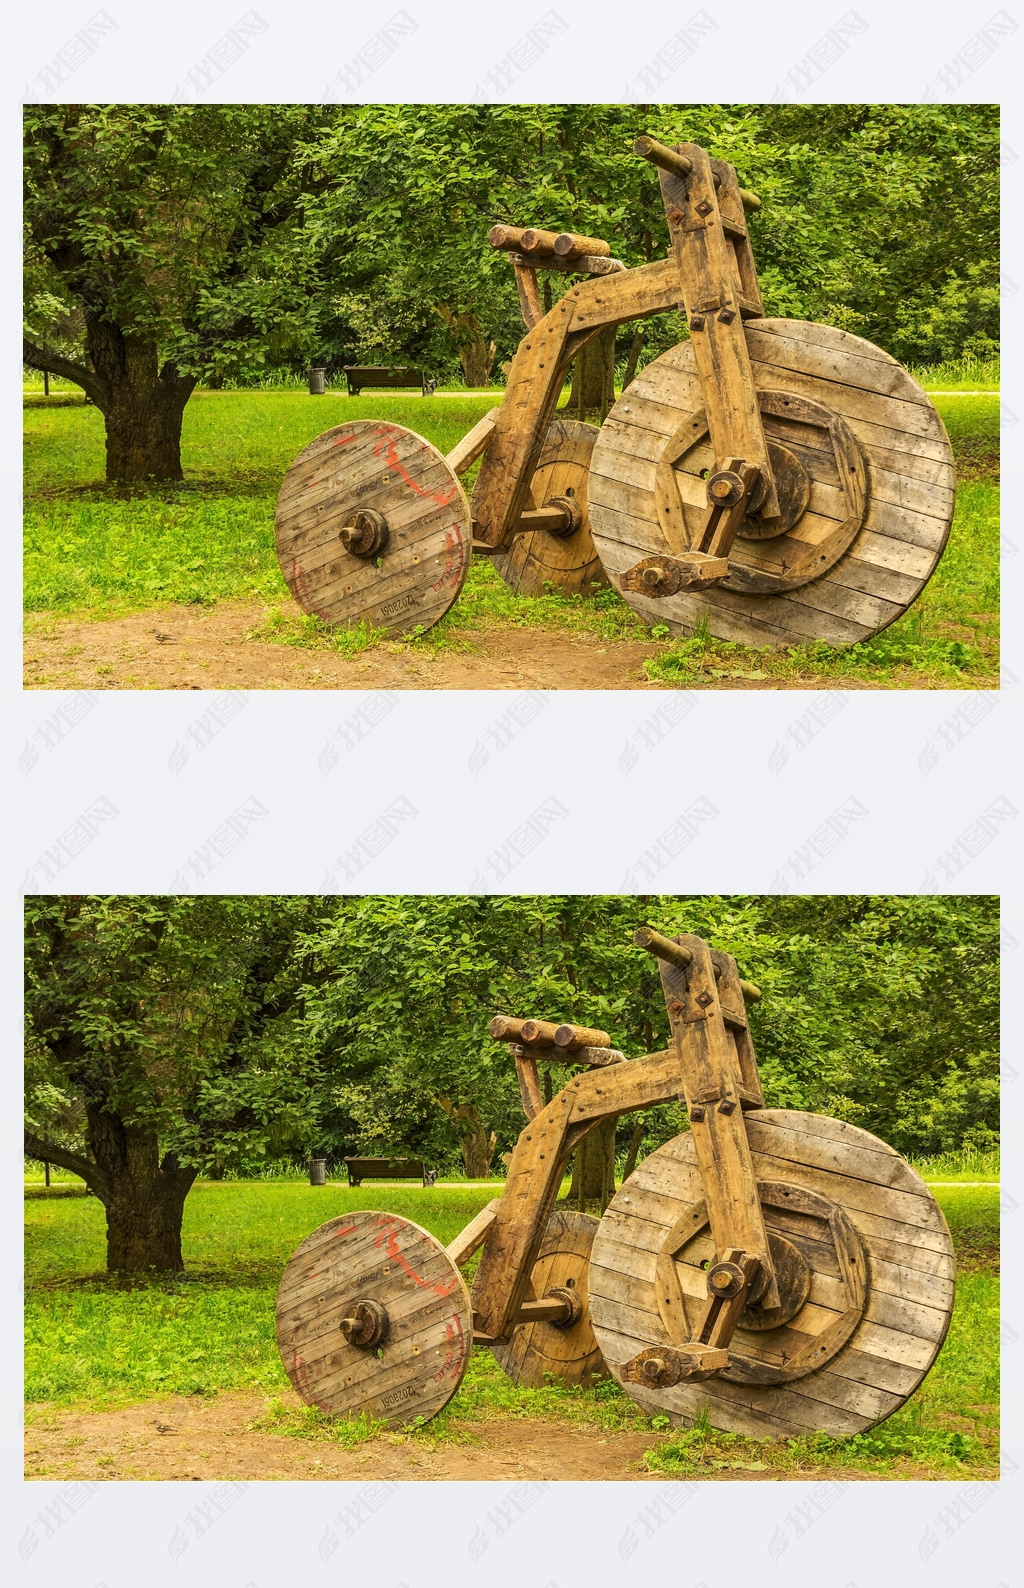 Wooden sculpture bike with three wheels